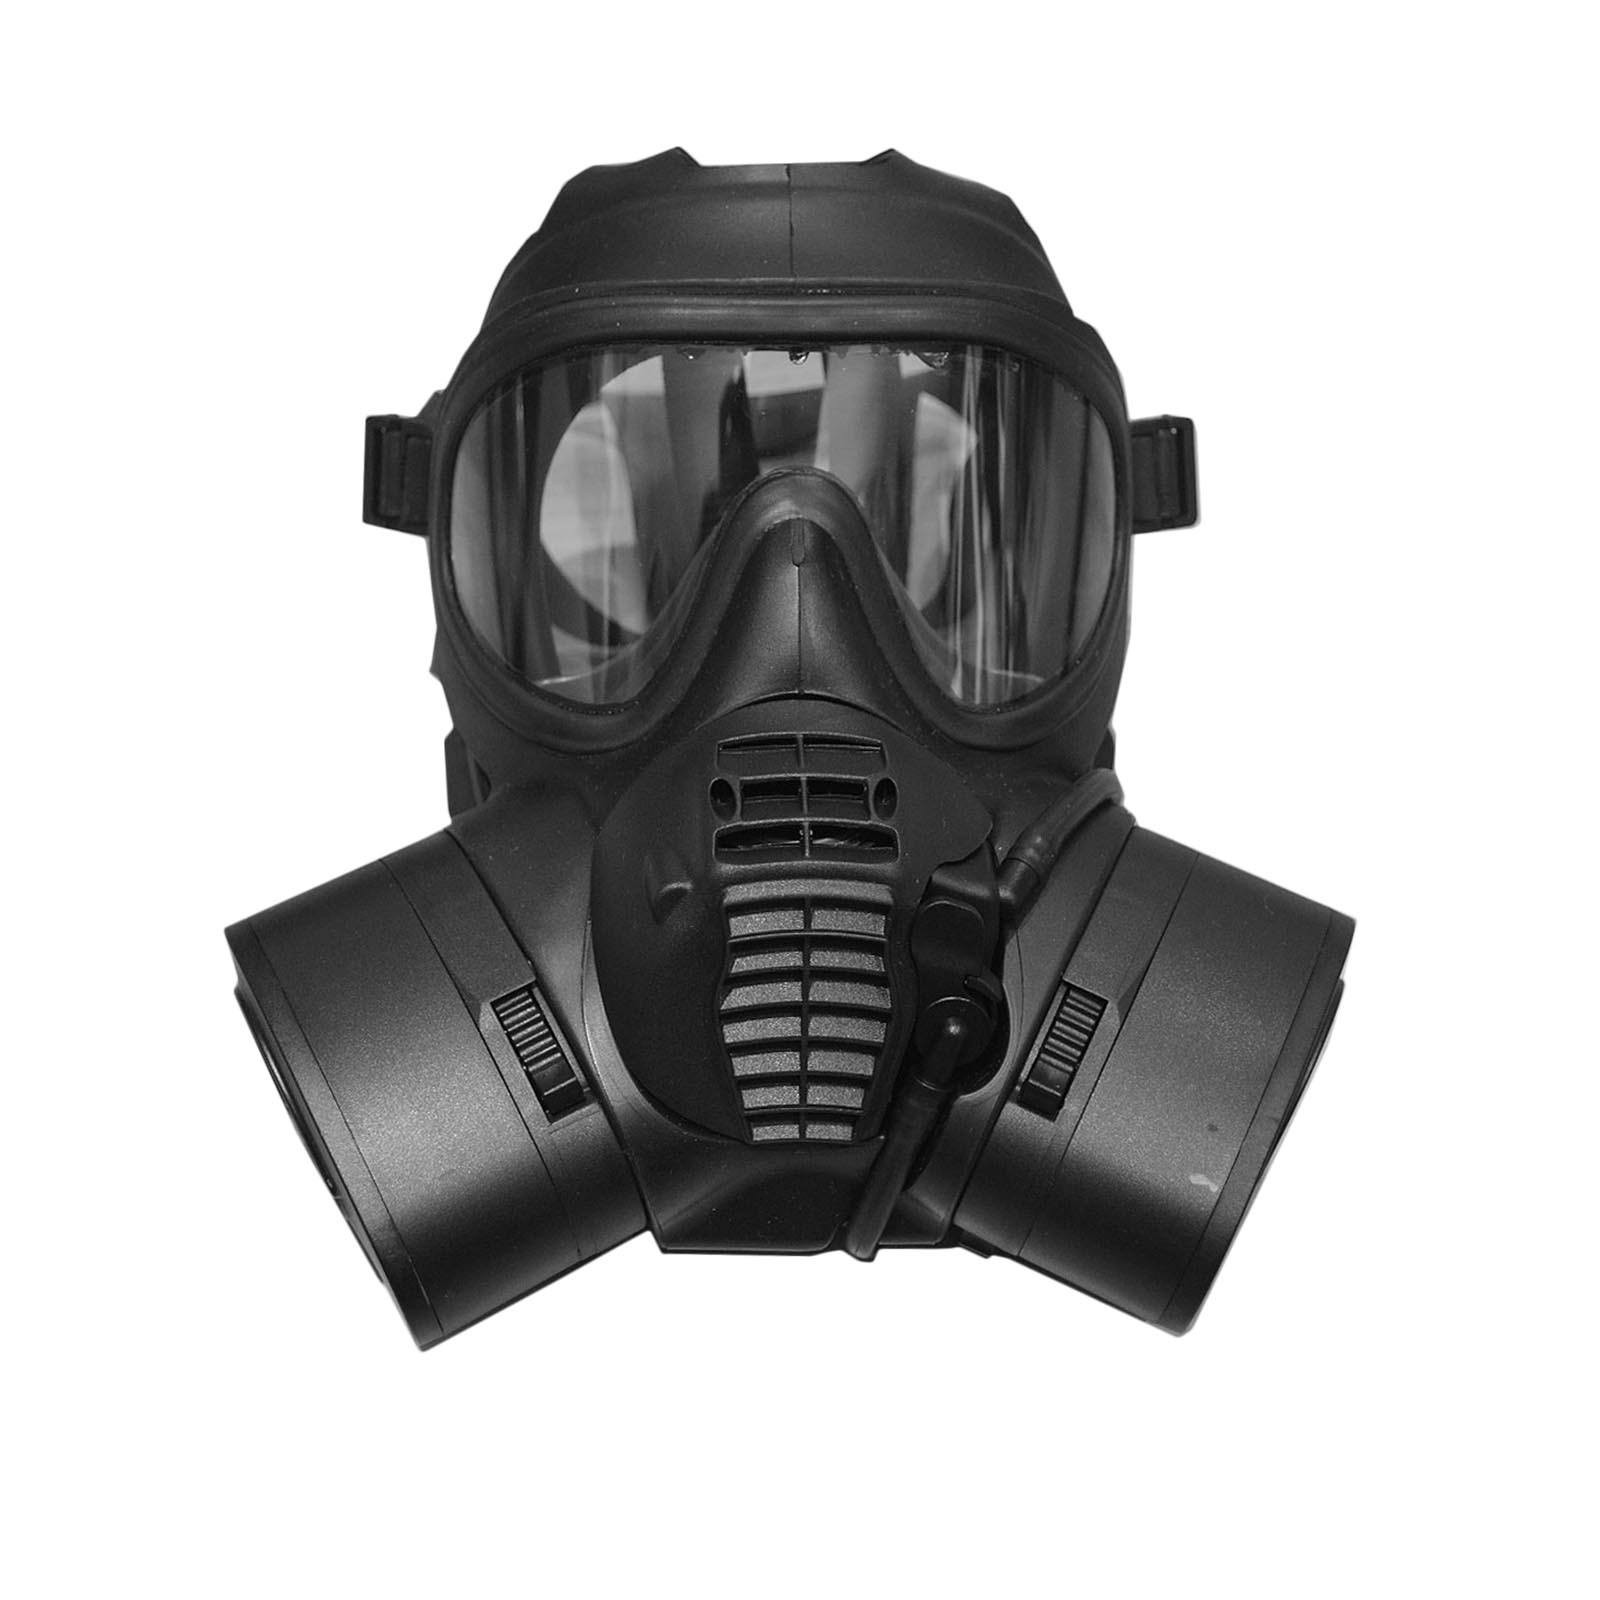 British Army GSR Gas Mask - buy at Goarmy.co.uk